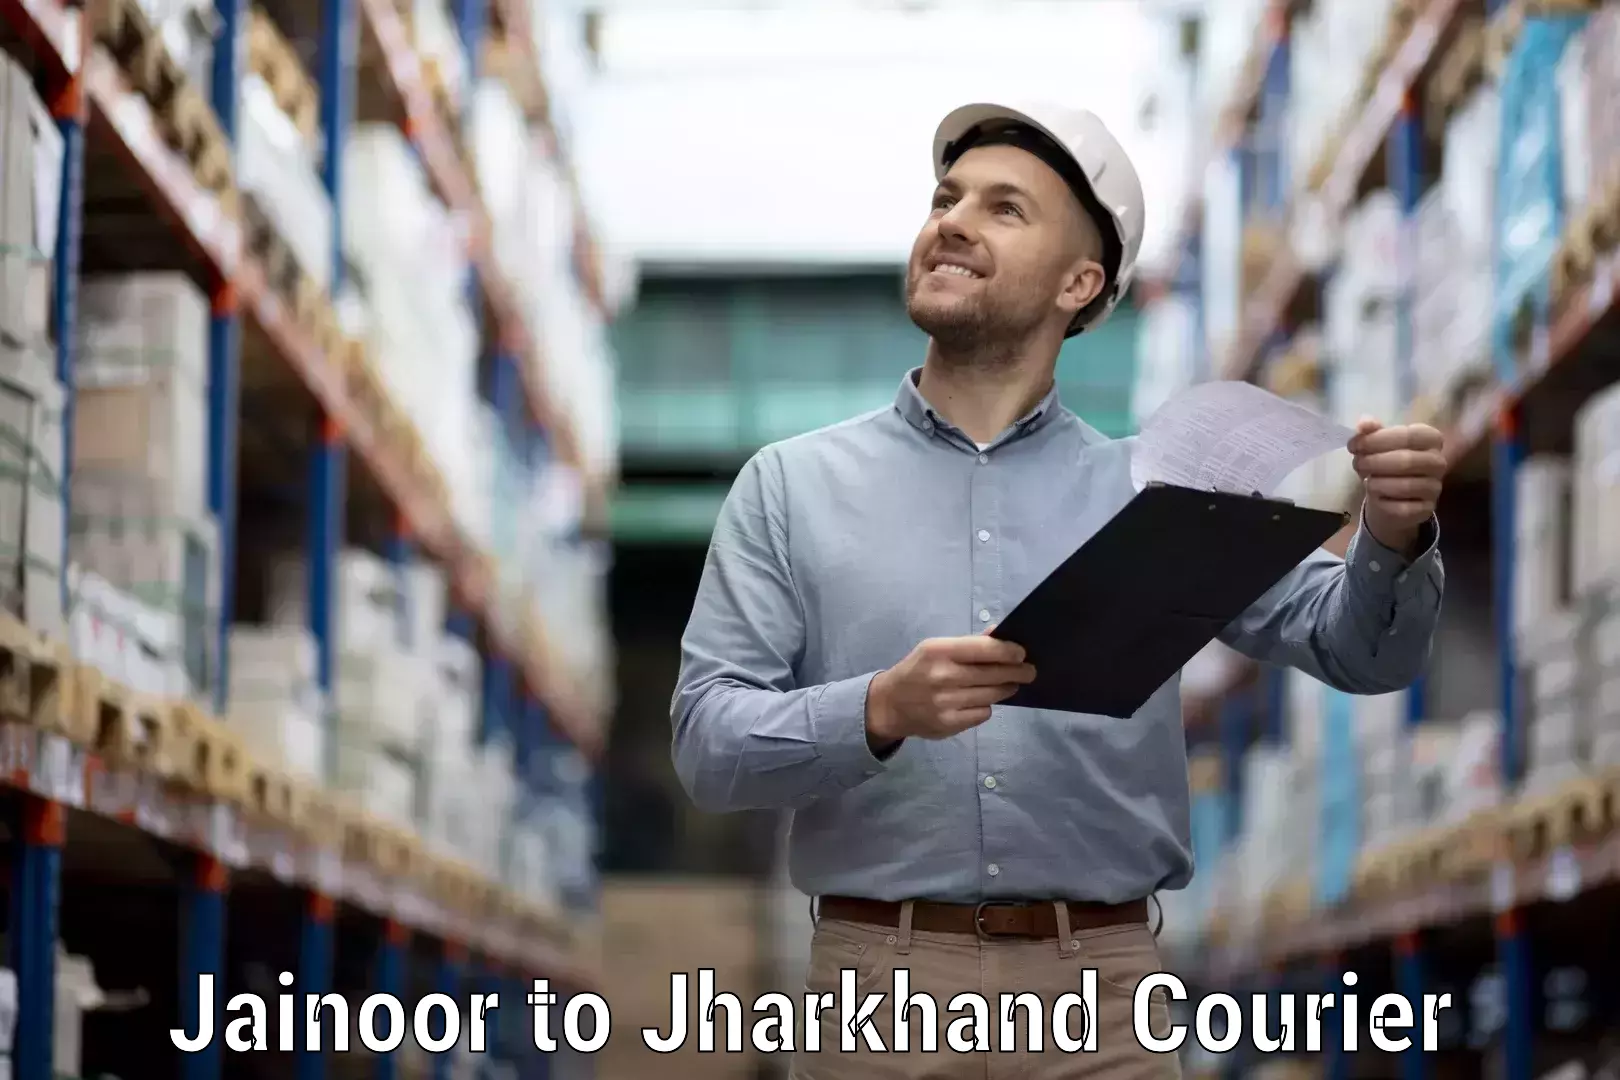 Flexible parcel services Jainoor to Domchanch